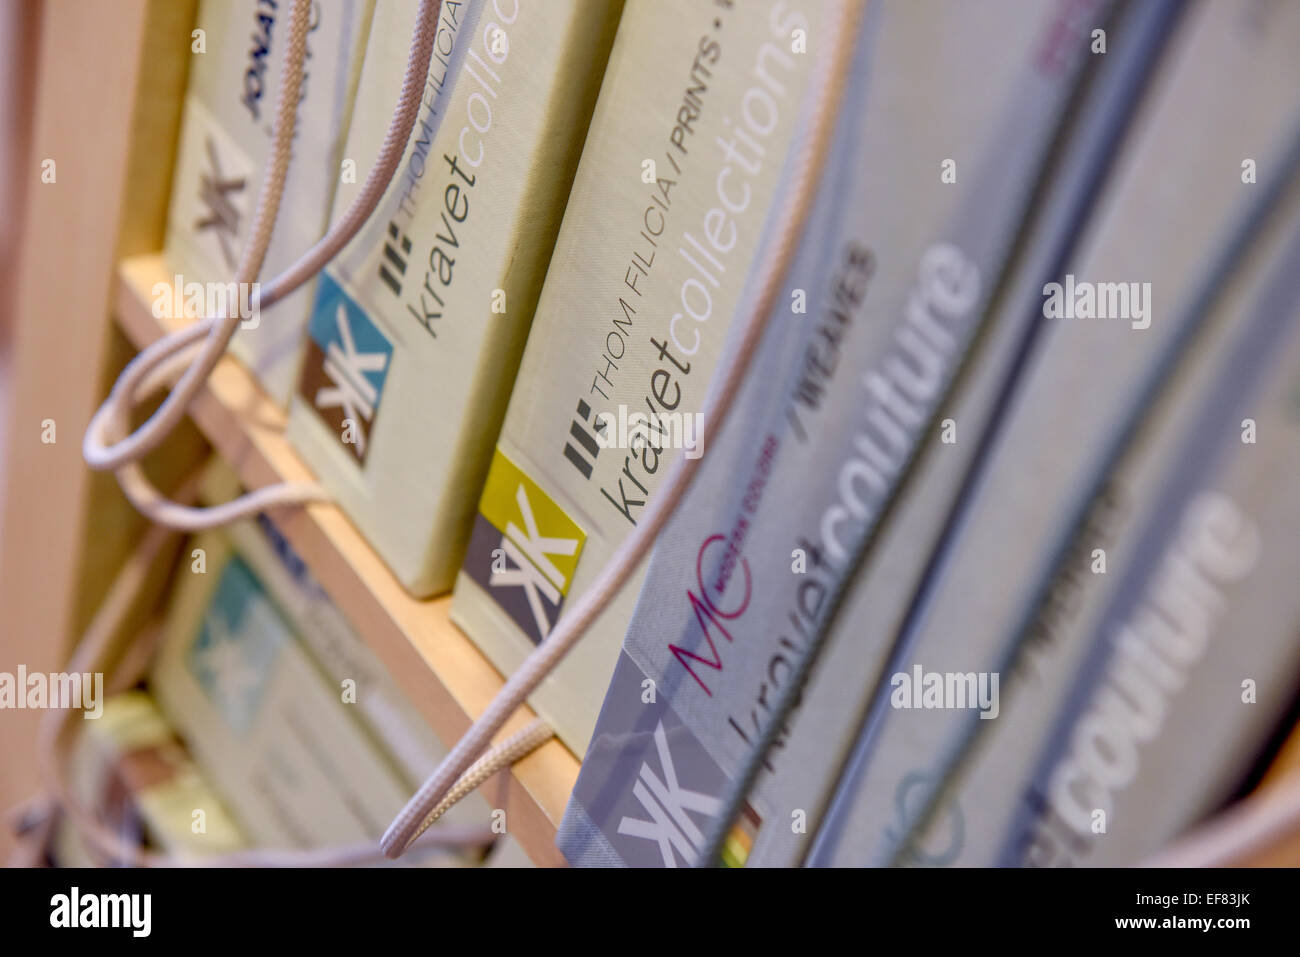 A shelf full of fabric sample books by Kravet. Stock Photo